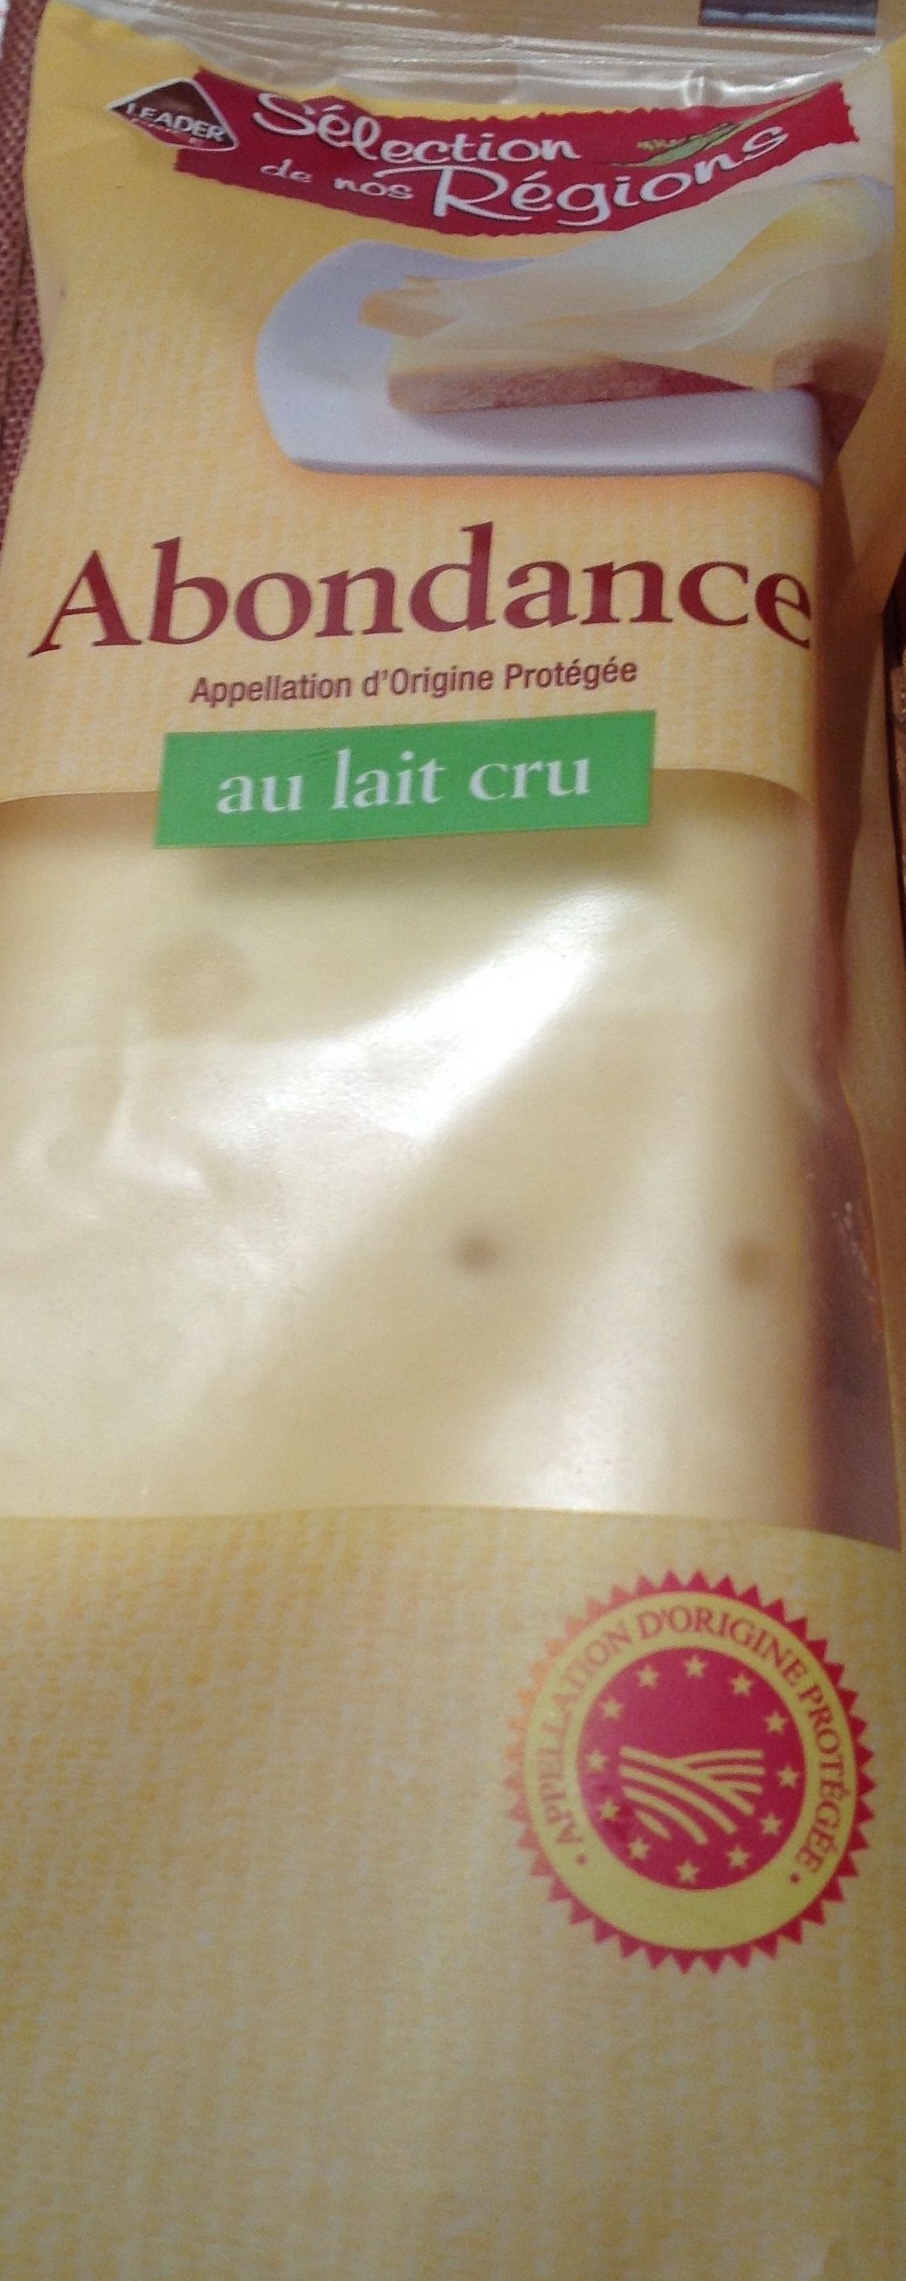 Abondance AOP au lait cru - Product - fr